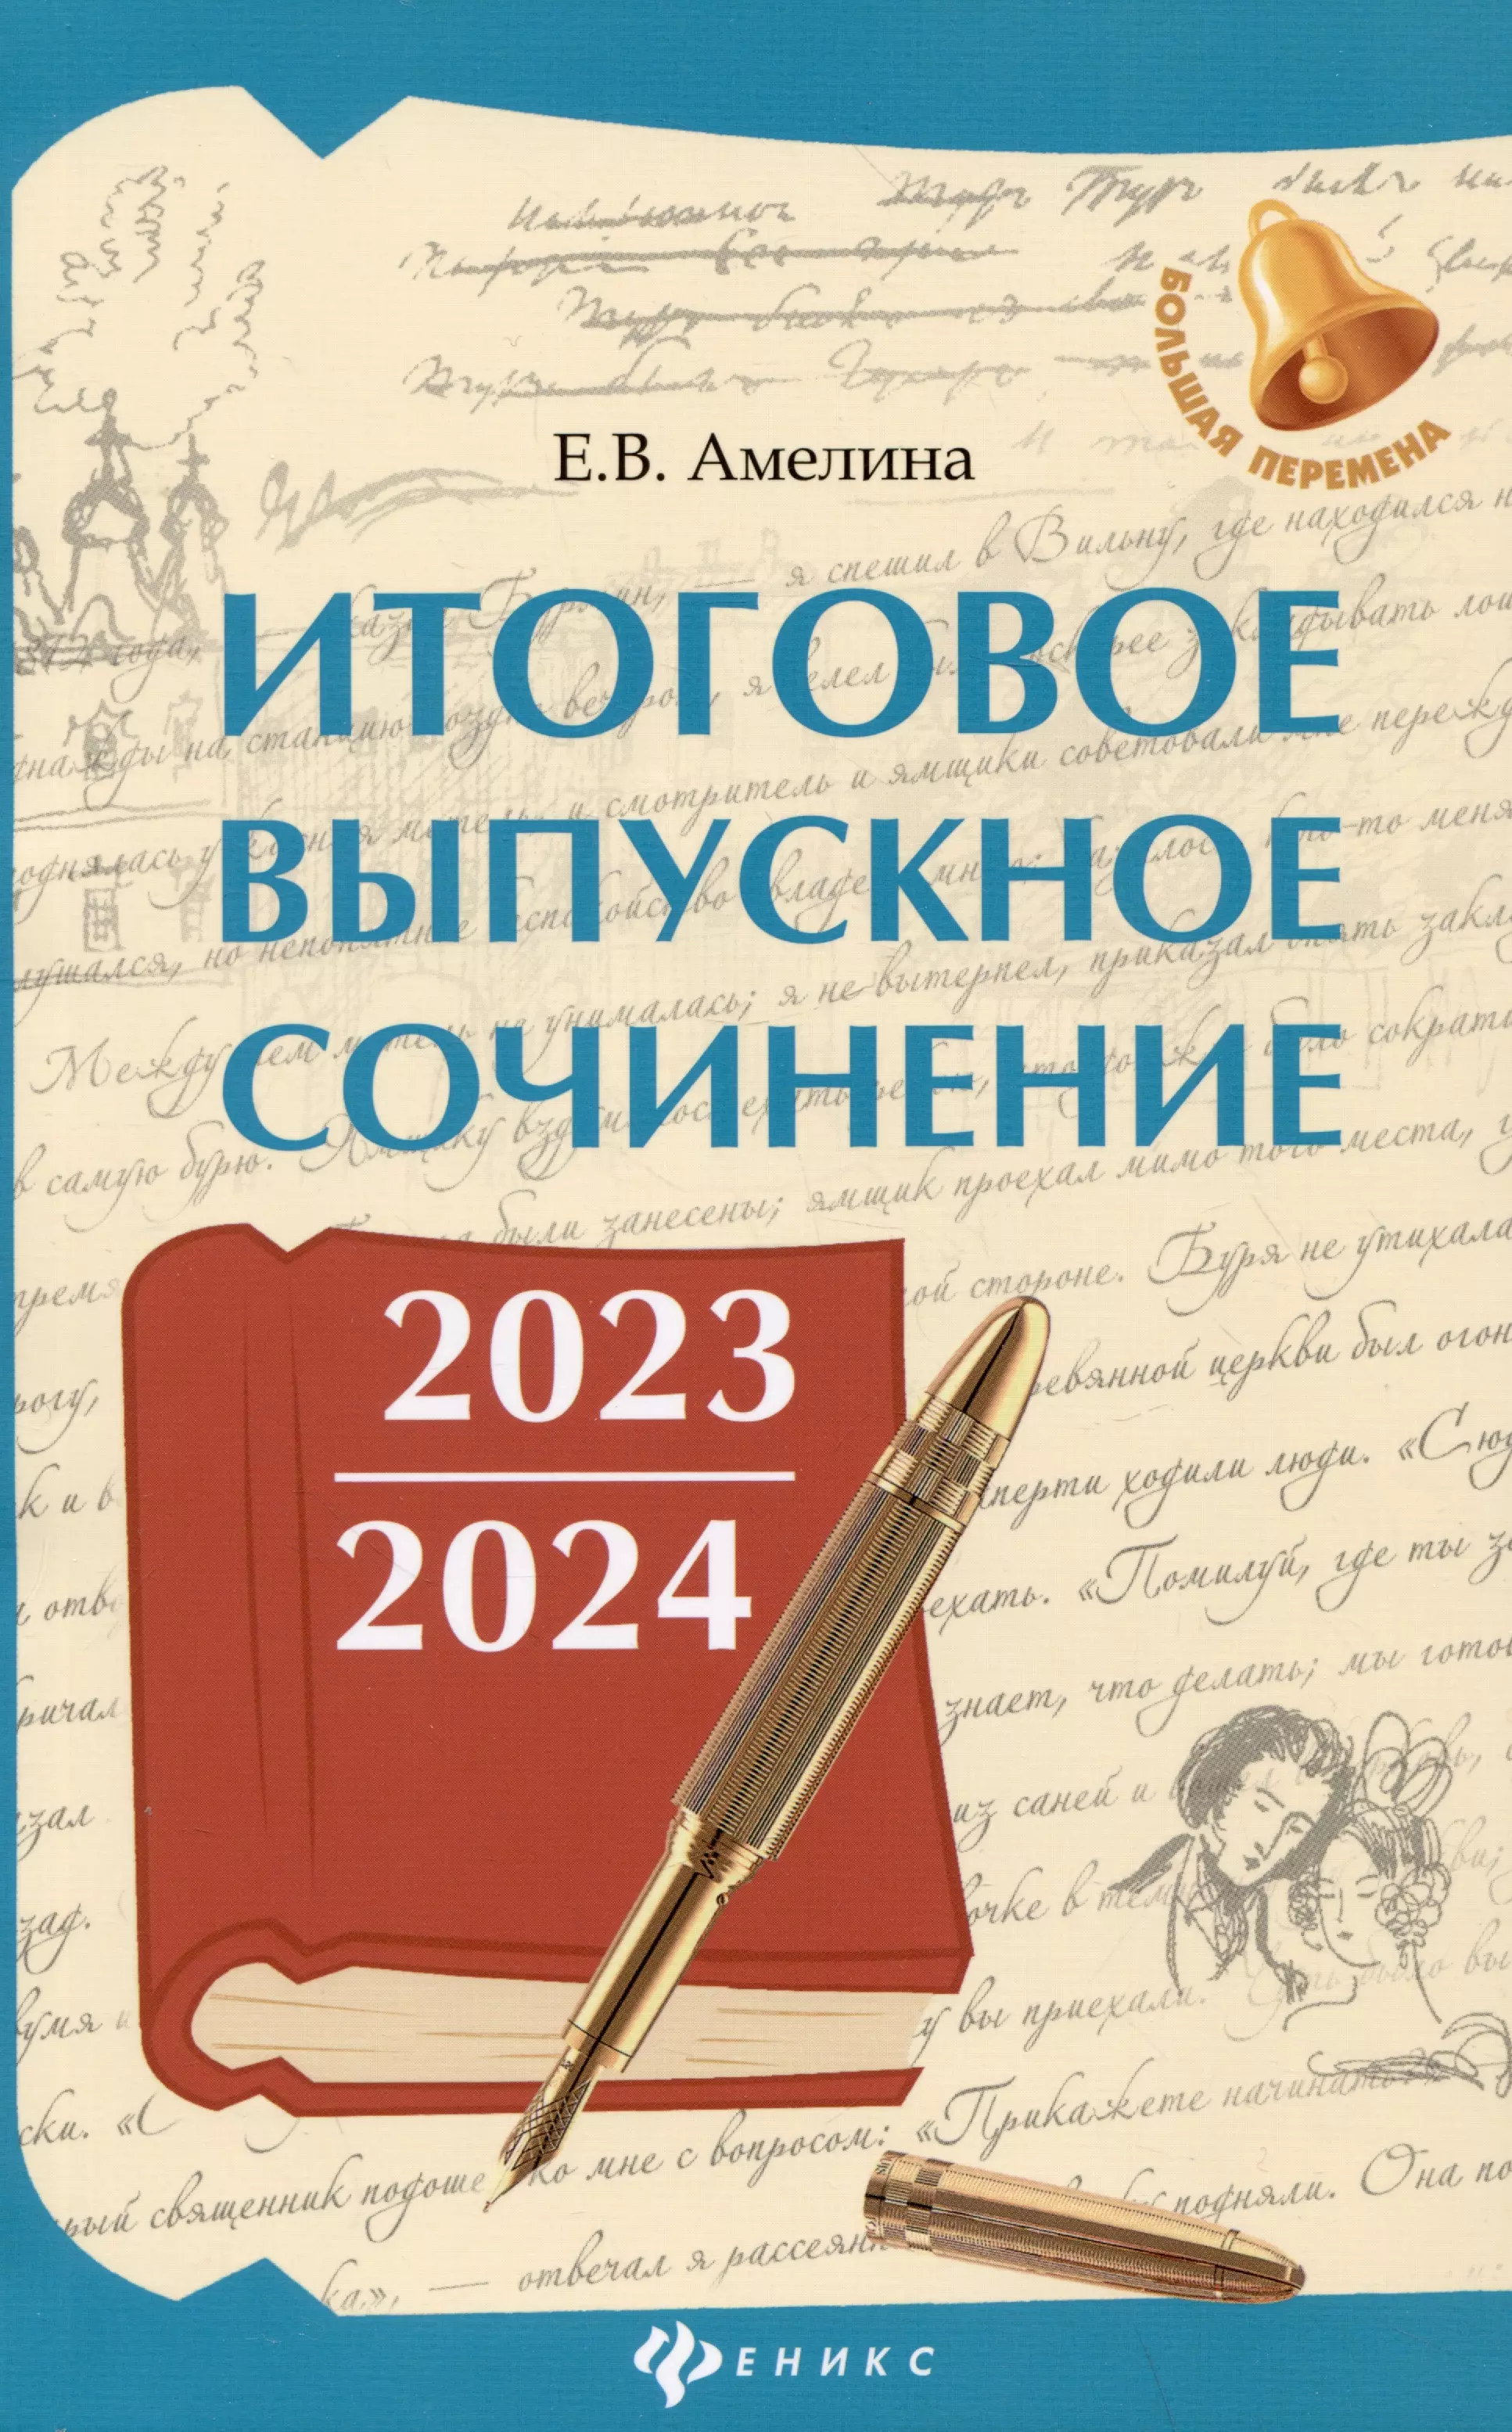 итоговое выпускное сочинение 2021 2022 амелина е в Итоговое выпускное сочинение 2023/2024